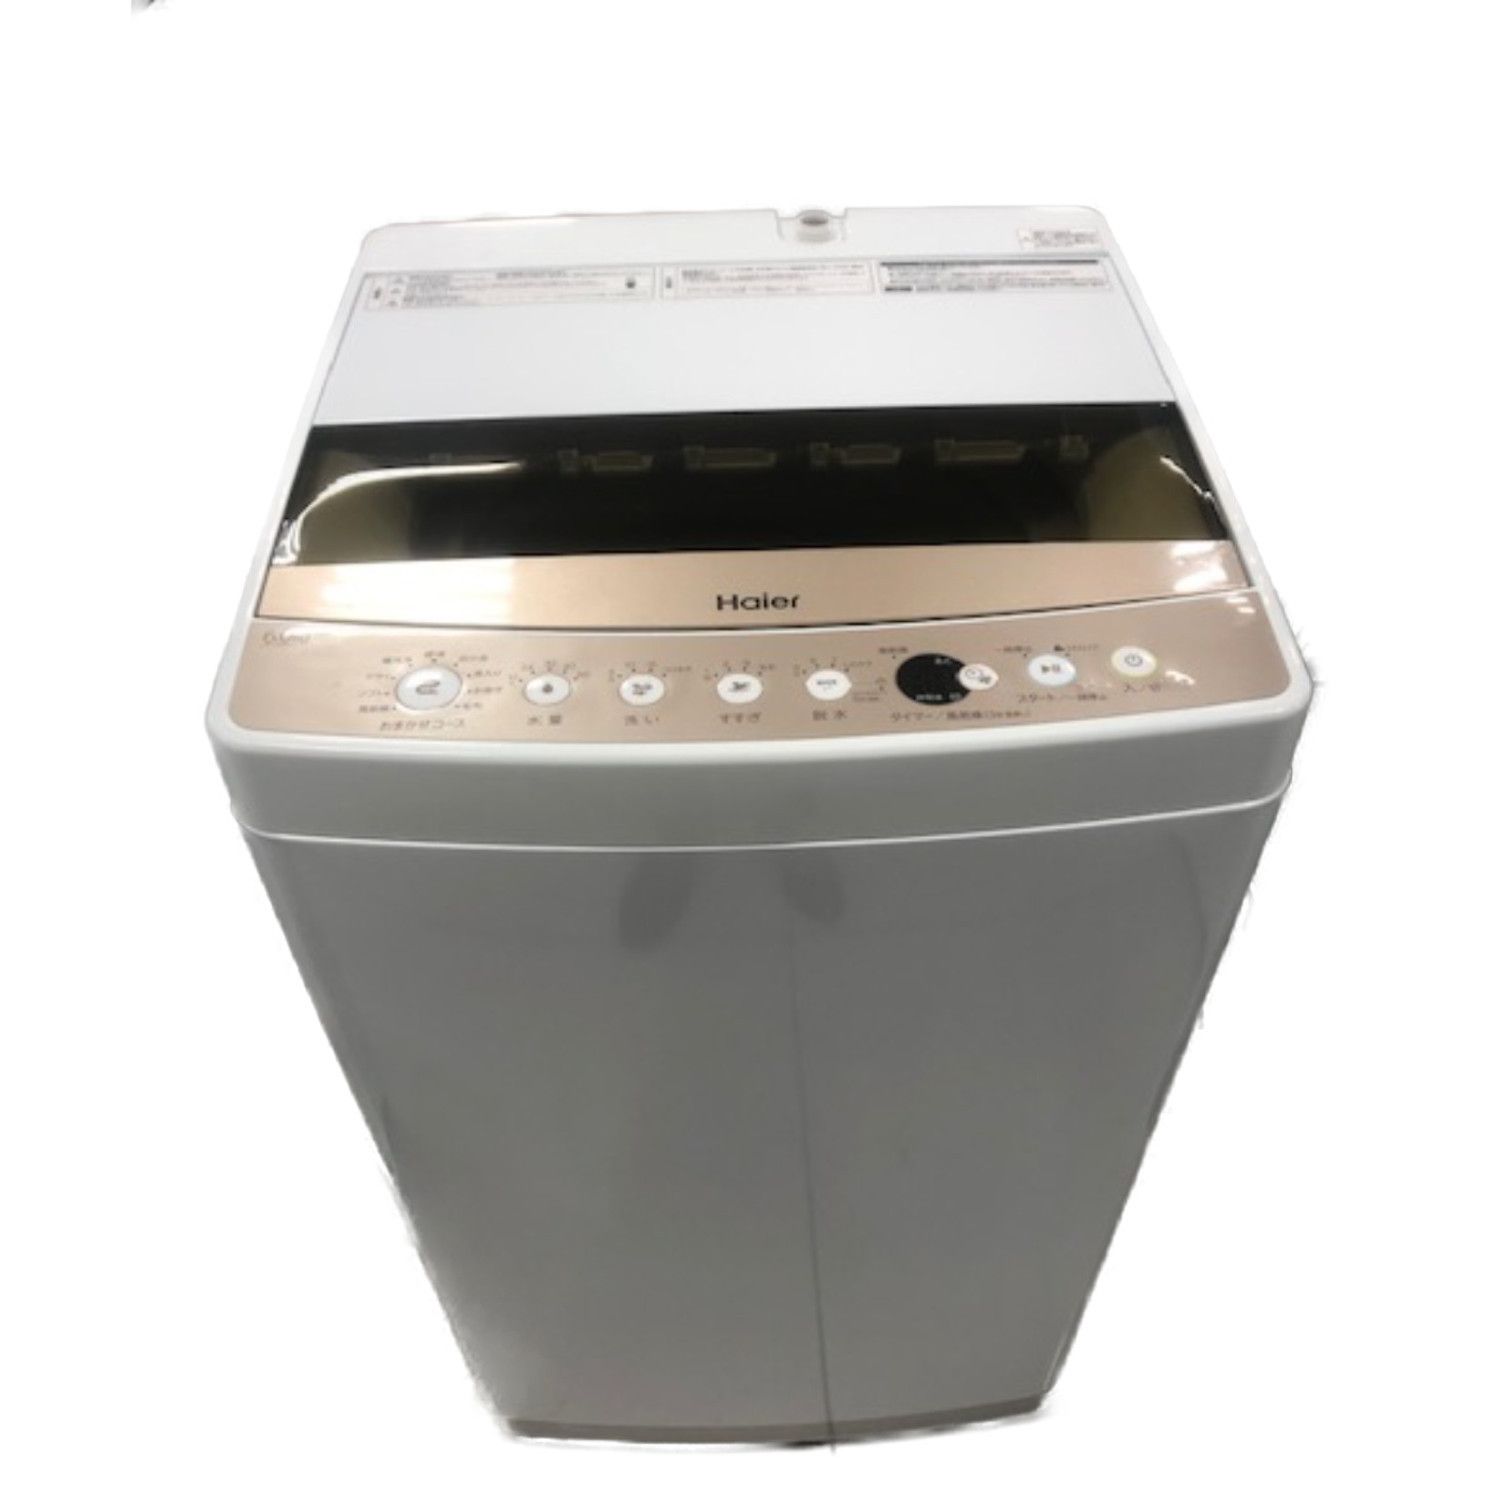 12月スーパーSALE 30日迄 2019 Haier 4.5kg洗濯機L128